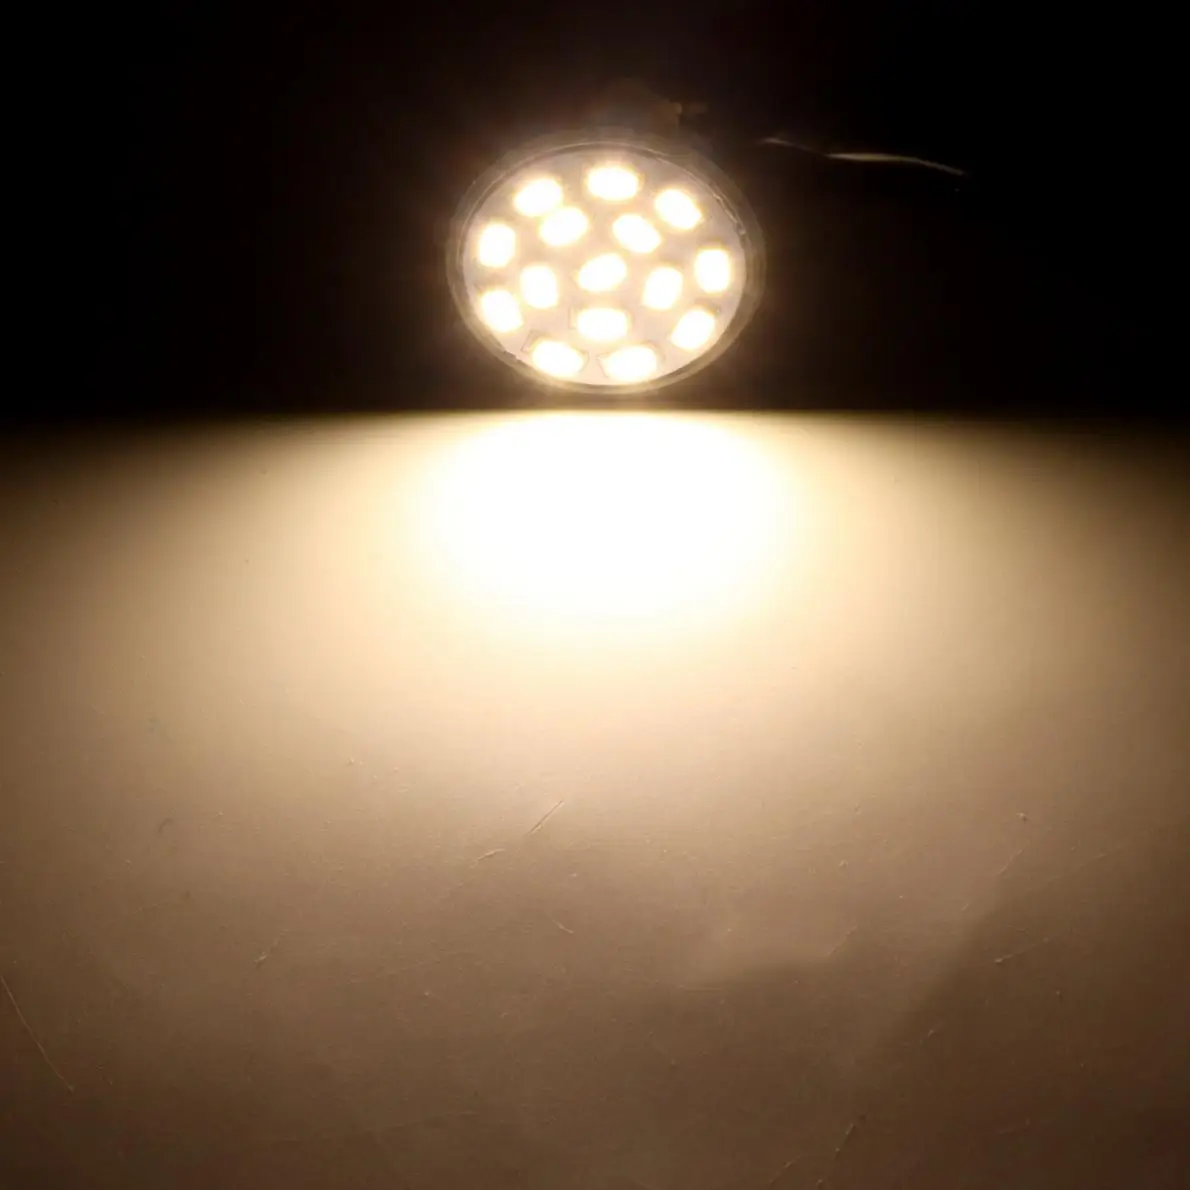 Mr11 LED Lampa Pohár 3W 12V 35MM Priemer 15 vinuté Perly Teplé Svetlo LED Žiarovka LED Reflektor na Osvetlenie